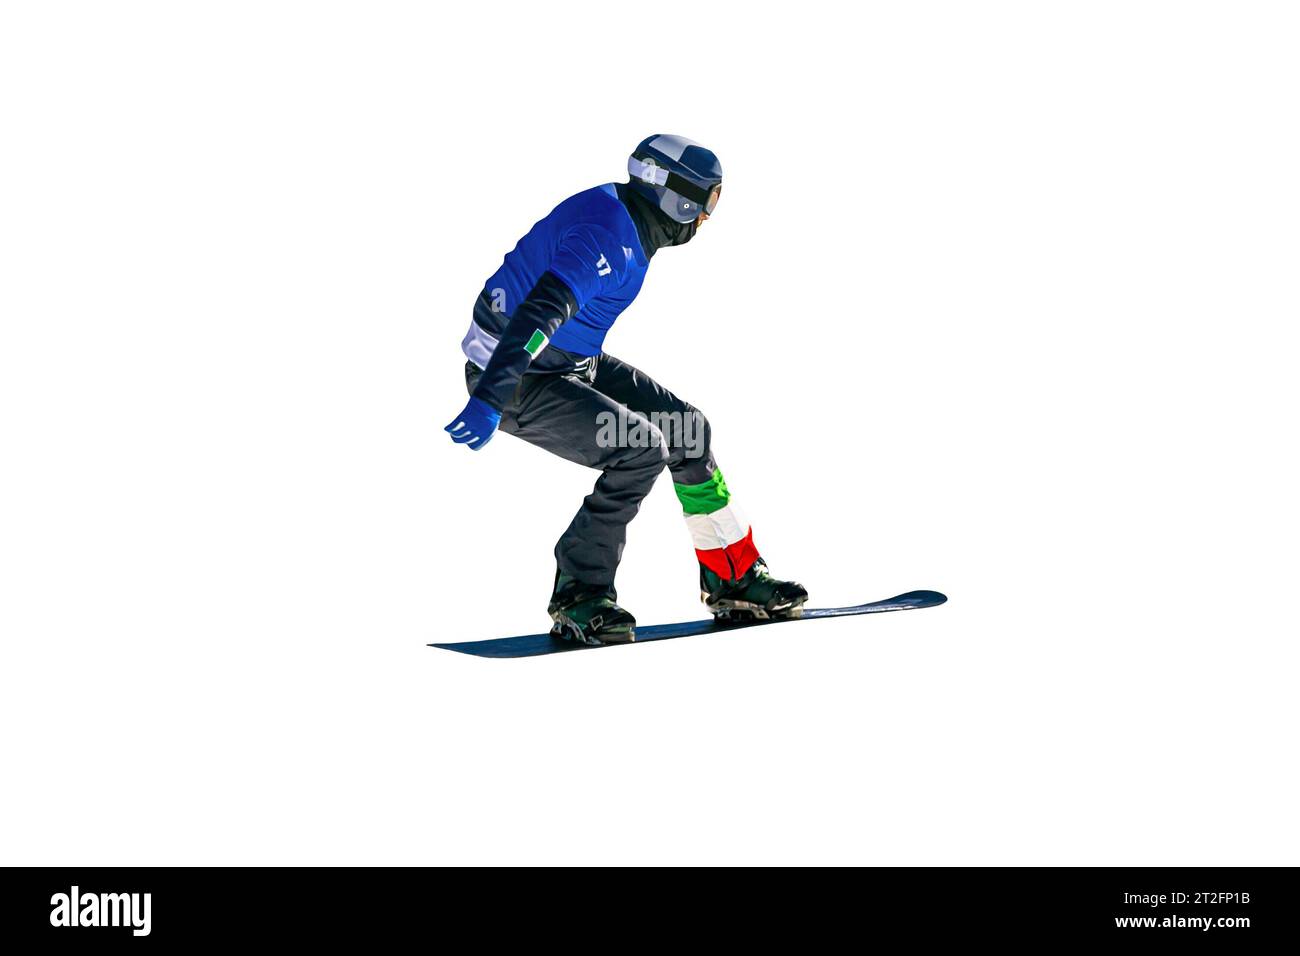 snowboarders italiens masculins sautant des gouttes dans la compétition de snowboard isolé sur fond blanc Banque D'Images